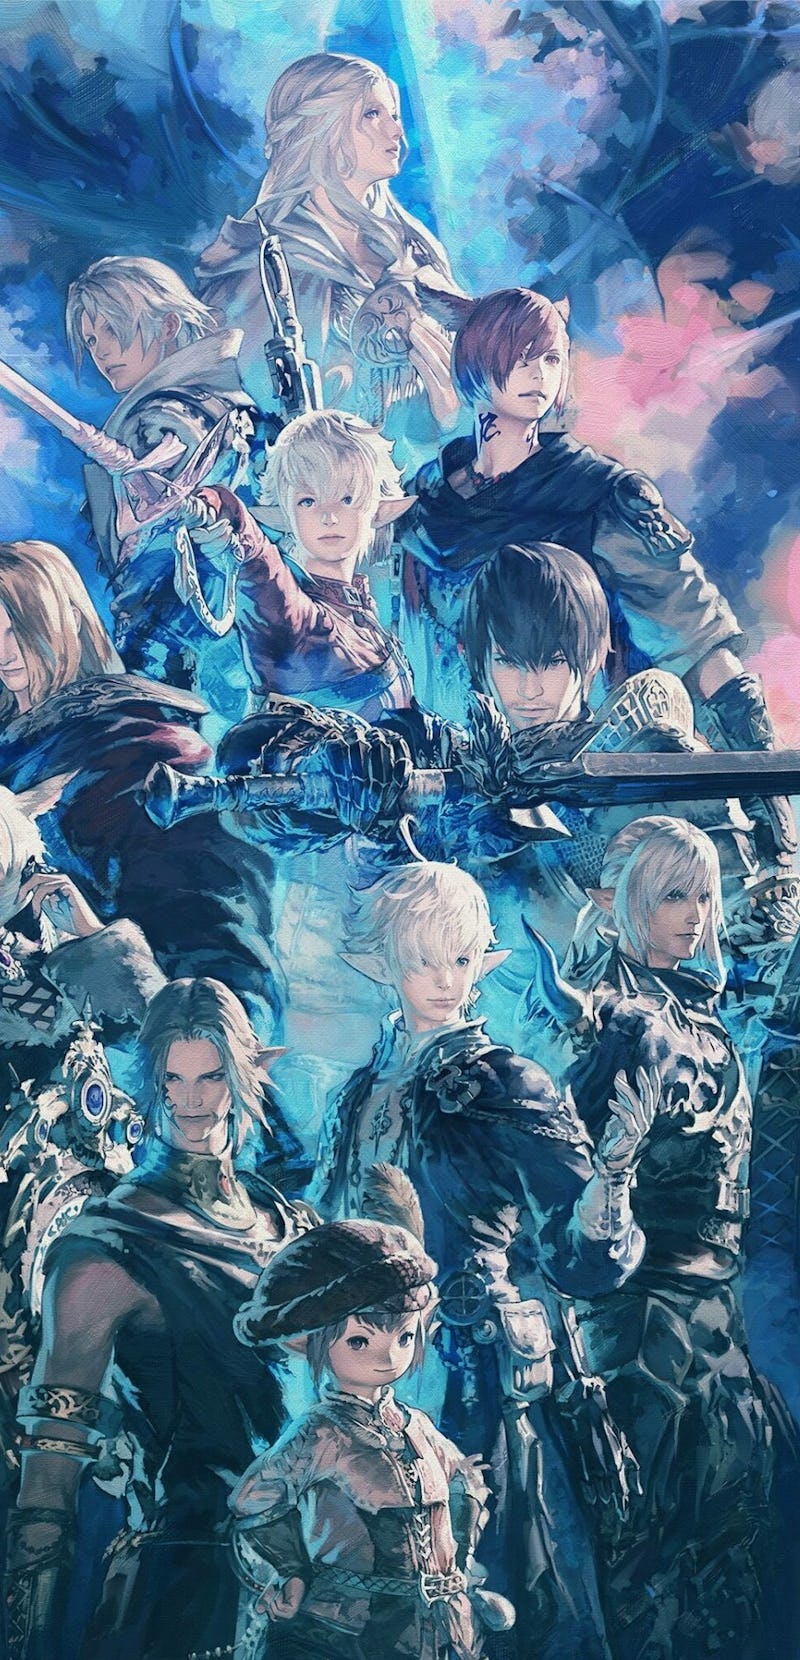 Final Fantasy 14 Endwalker character poster